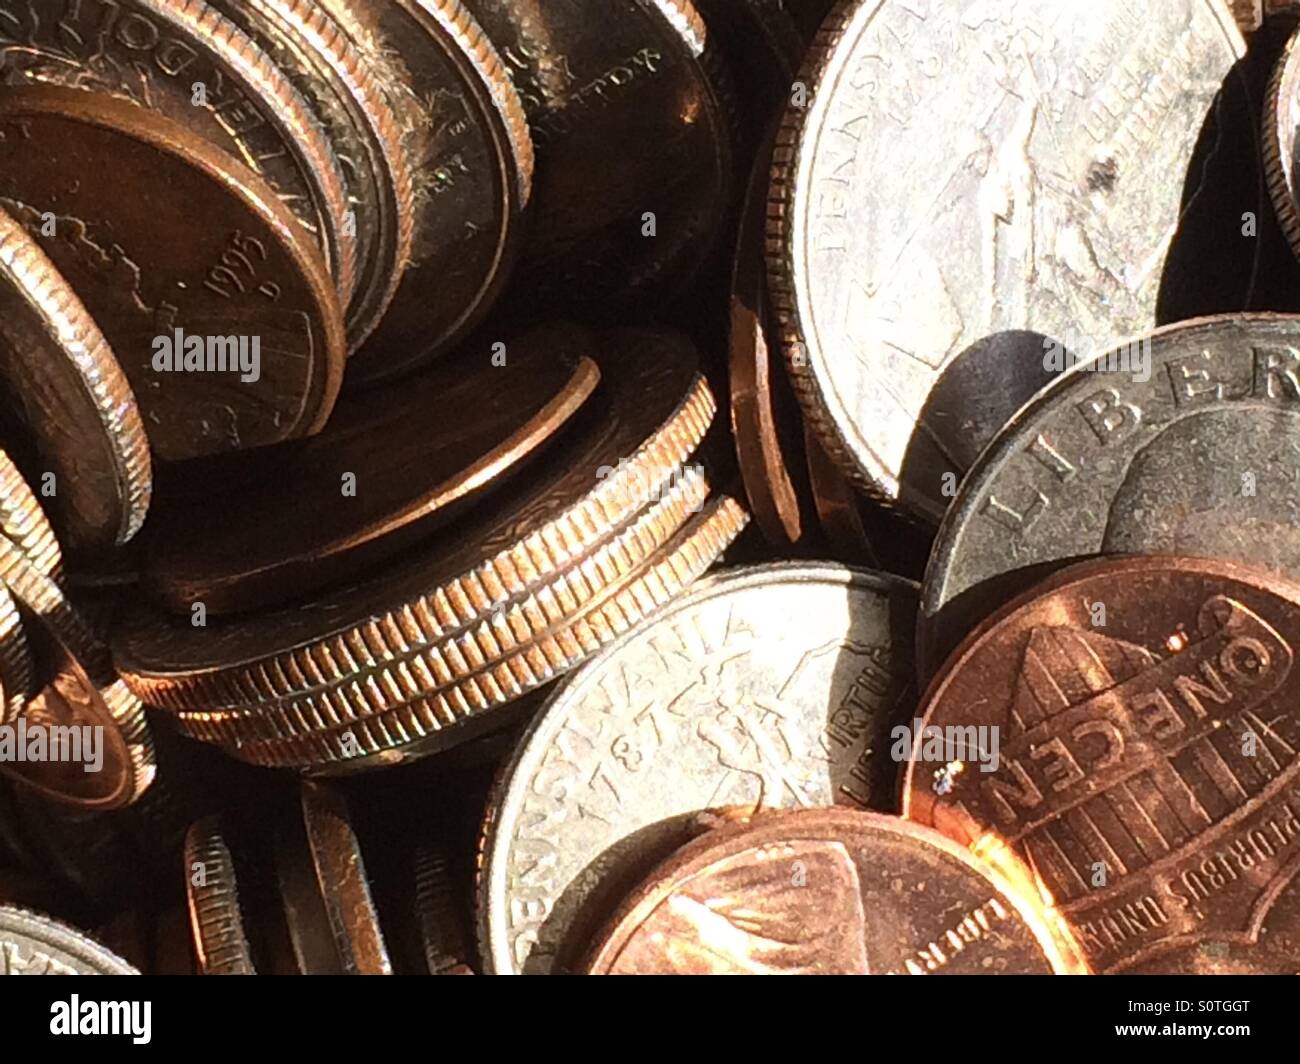 Shiny coins Stock Photo